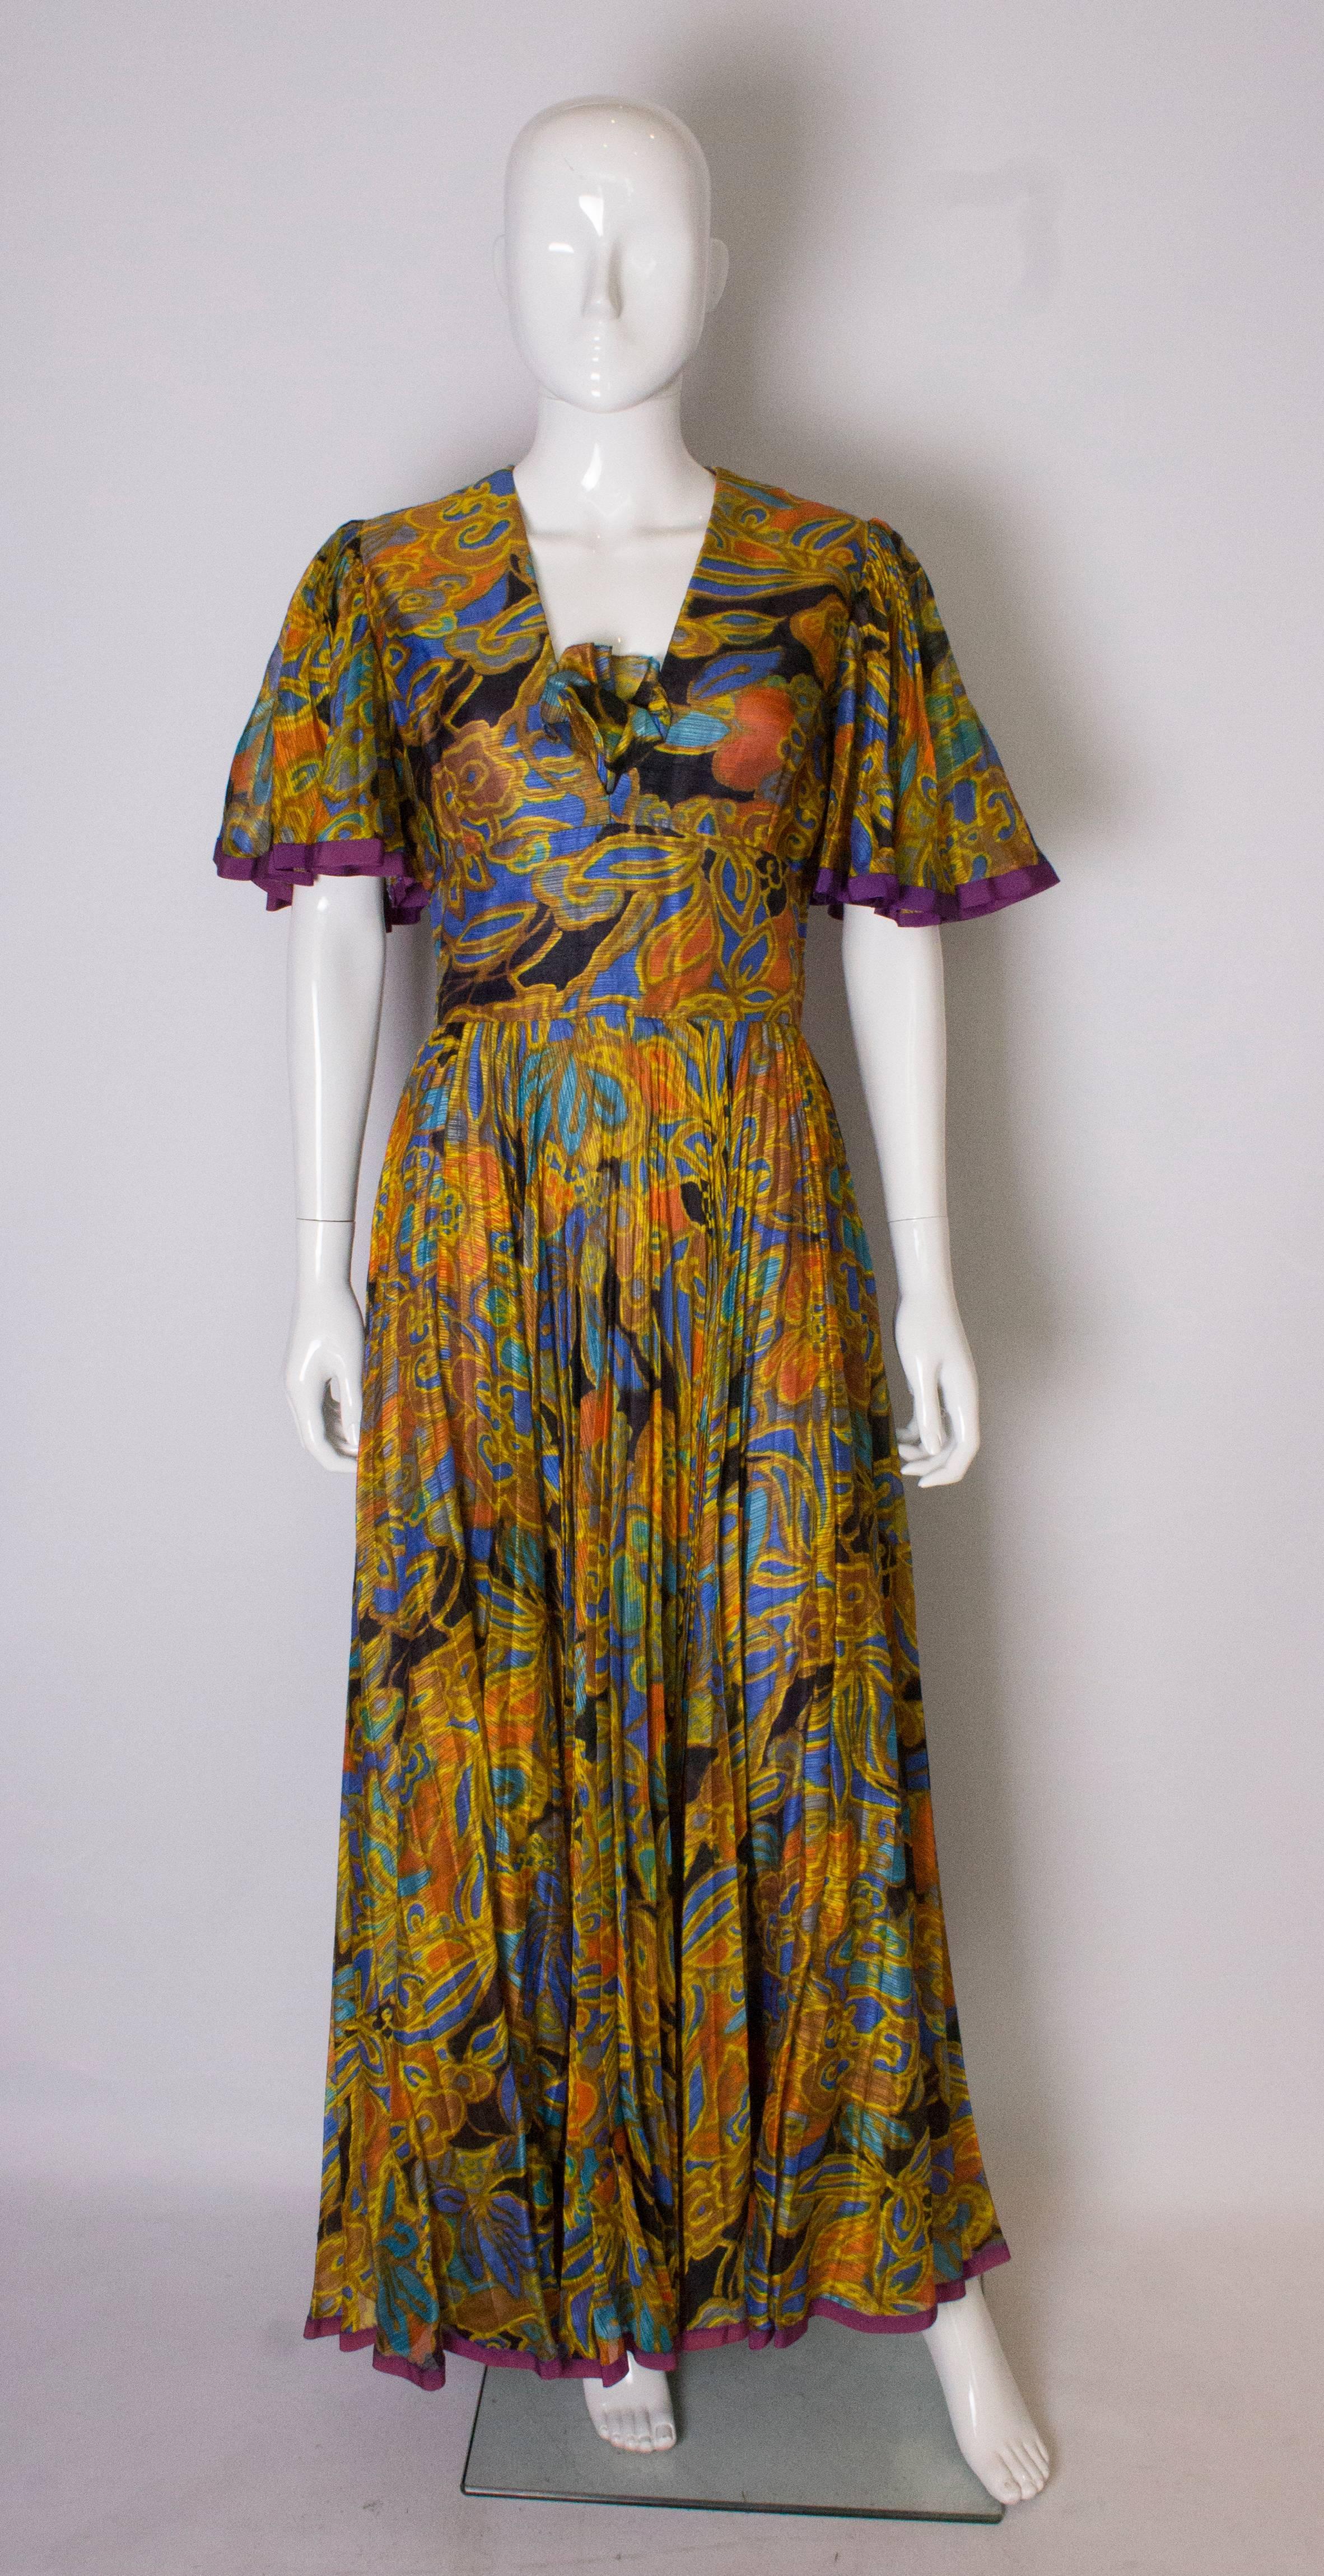 Ein hübsches Vintage-Kleid von Ross Bergo für Harrods. Das Kleid ist mehrfarbig und hat einen lilafarbenen Saum. Es hat eine abnehmbare Schamhaube, d.h. wenn man sie entfernt, hat das Kleid einen definierten V-Ausschnitt. Es hat einen zentralen